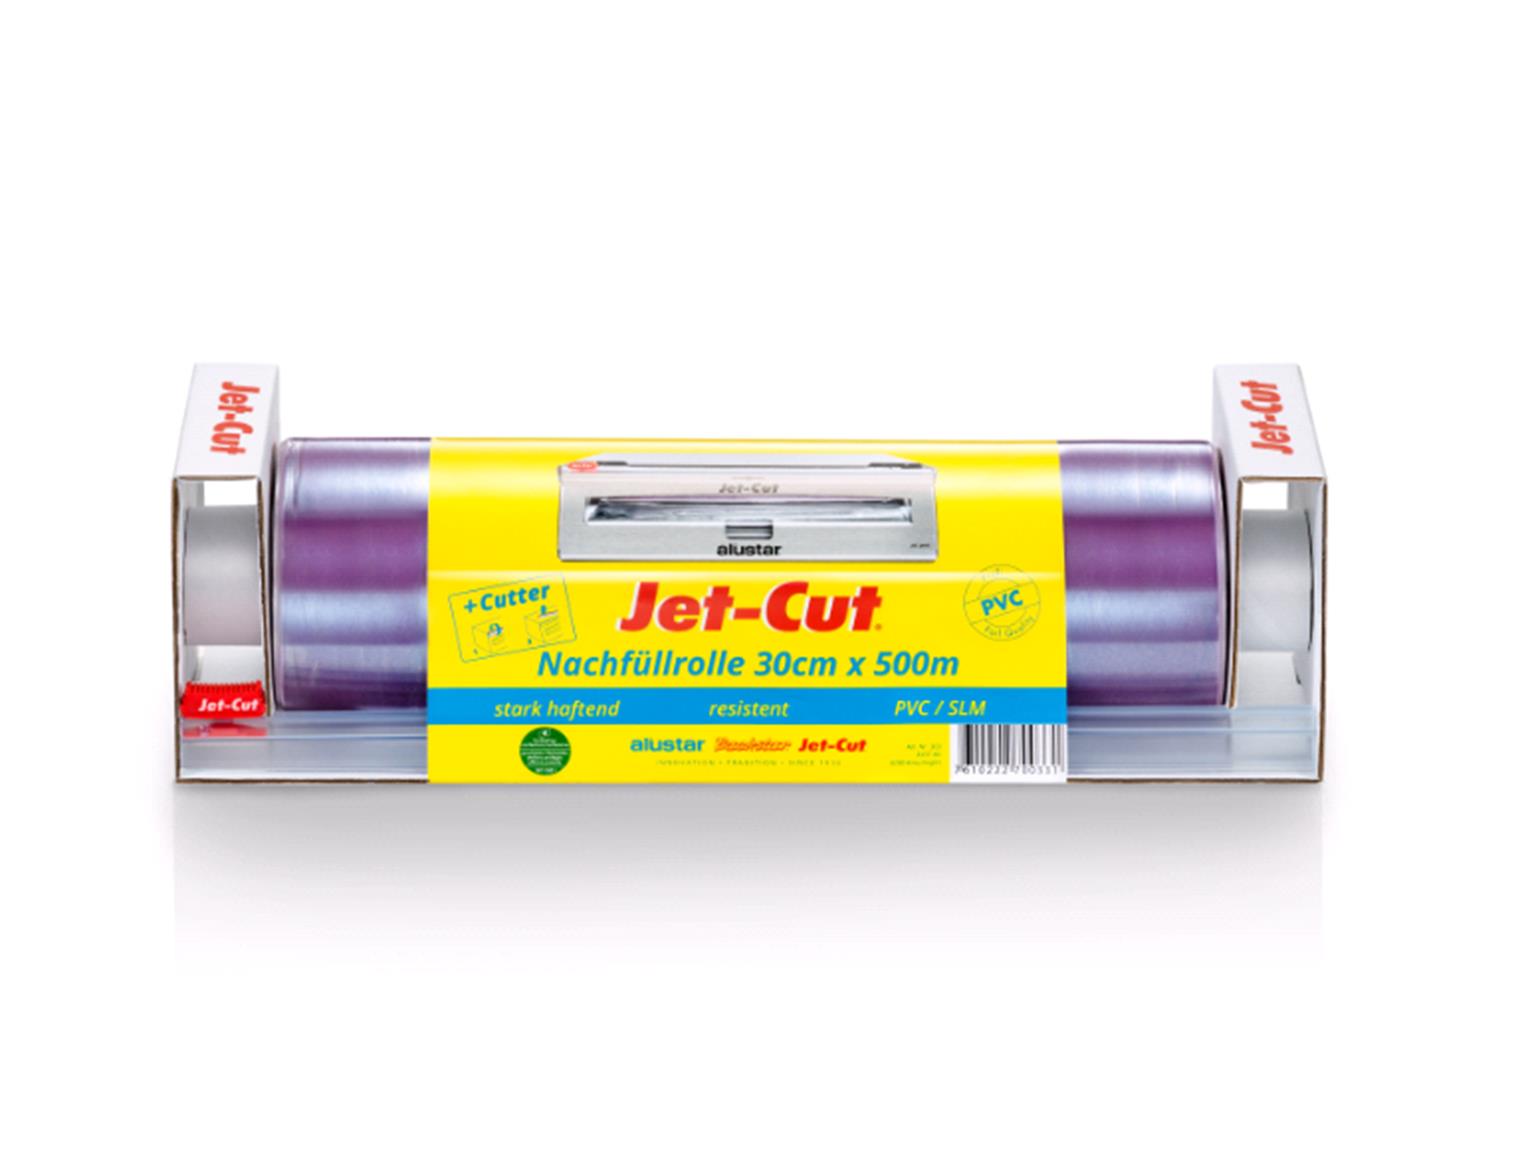 FRISCHHALTEFOLIE JET-CUT NACHFÜLLROLLE  30 cm x 500 m, Jet-Cut PVC Nachfüllrolle